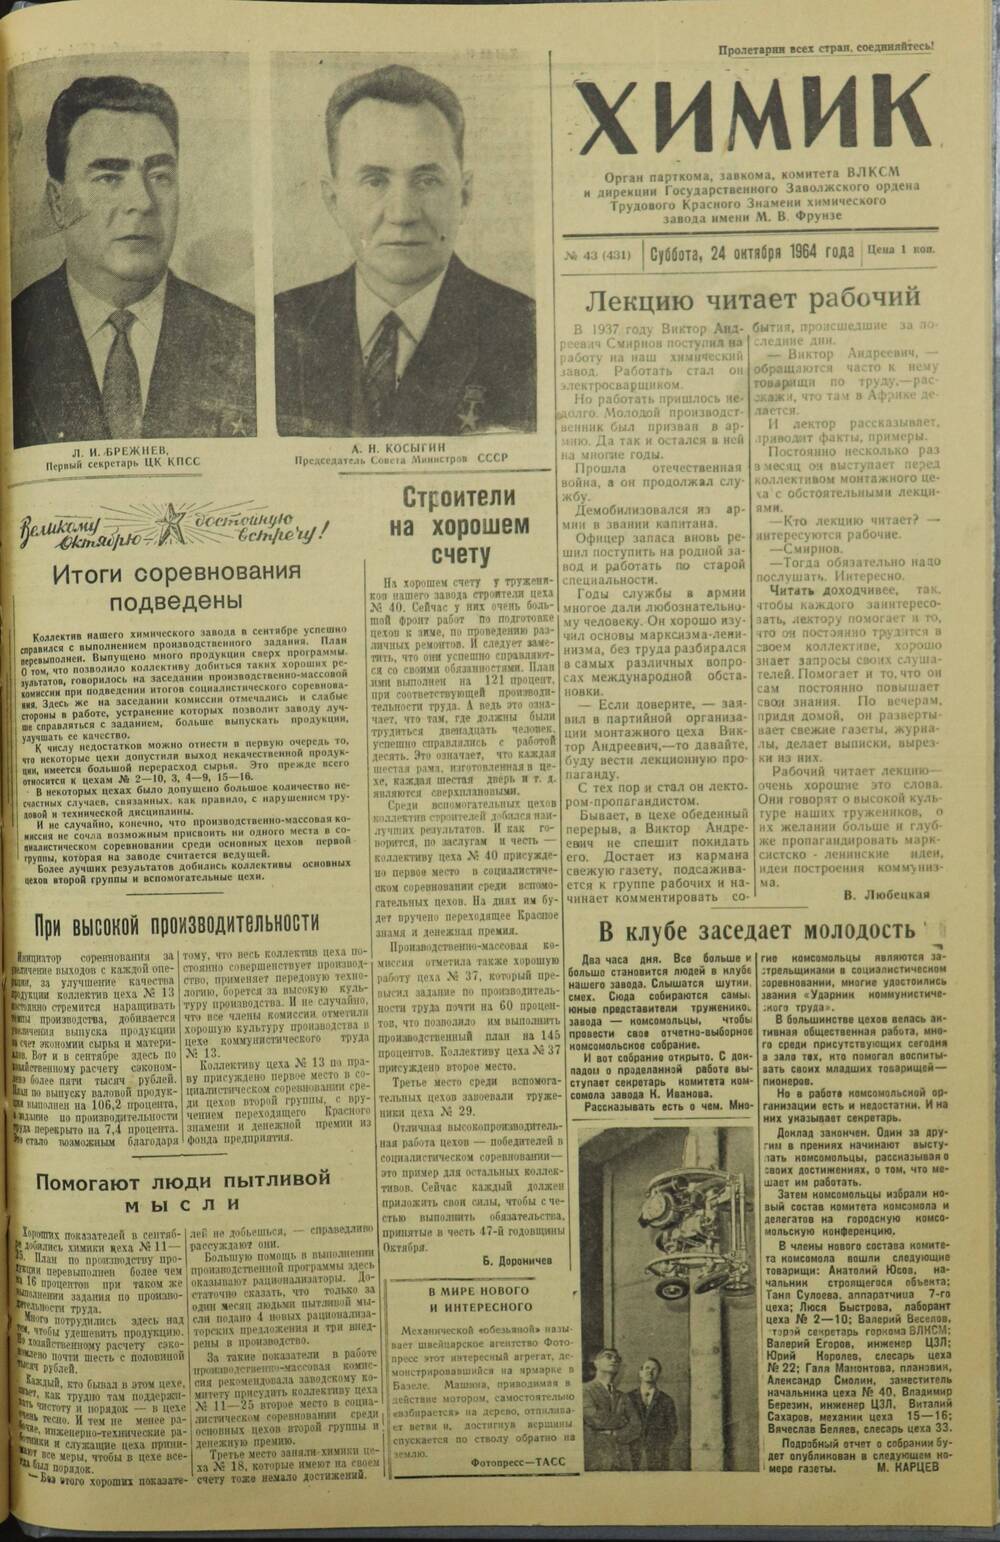 Газета «Химик» № 43 от 24 октября 1964 года.